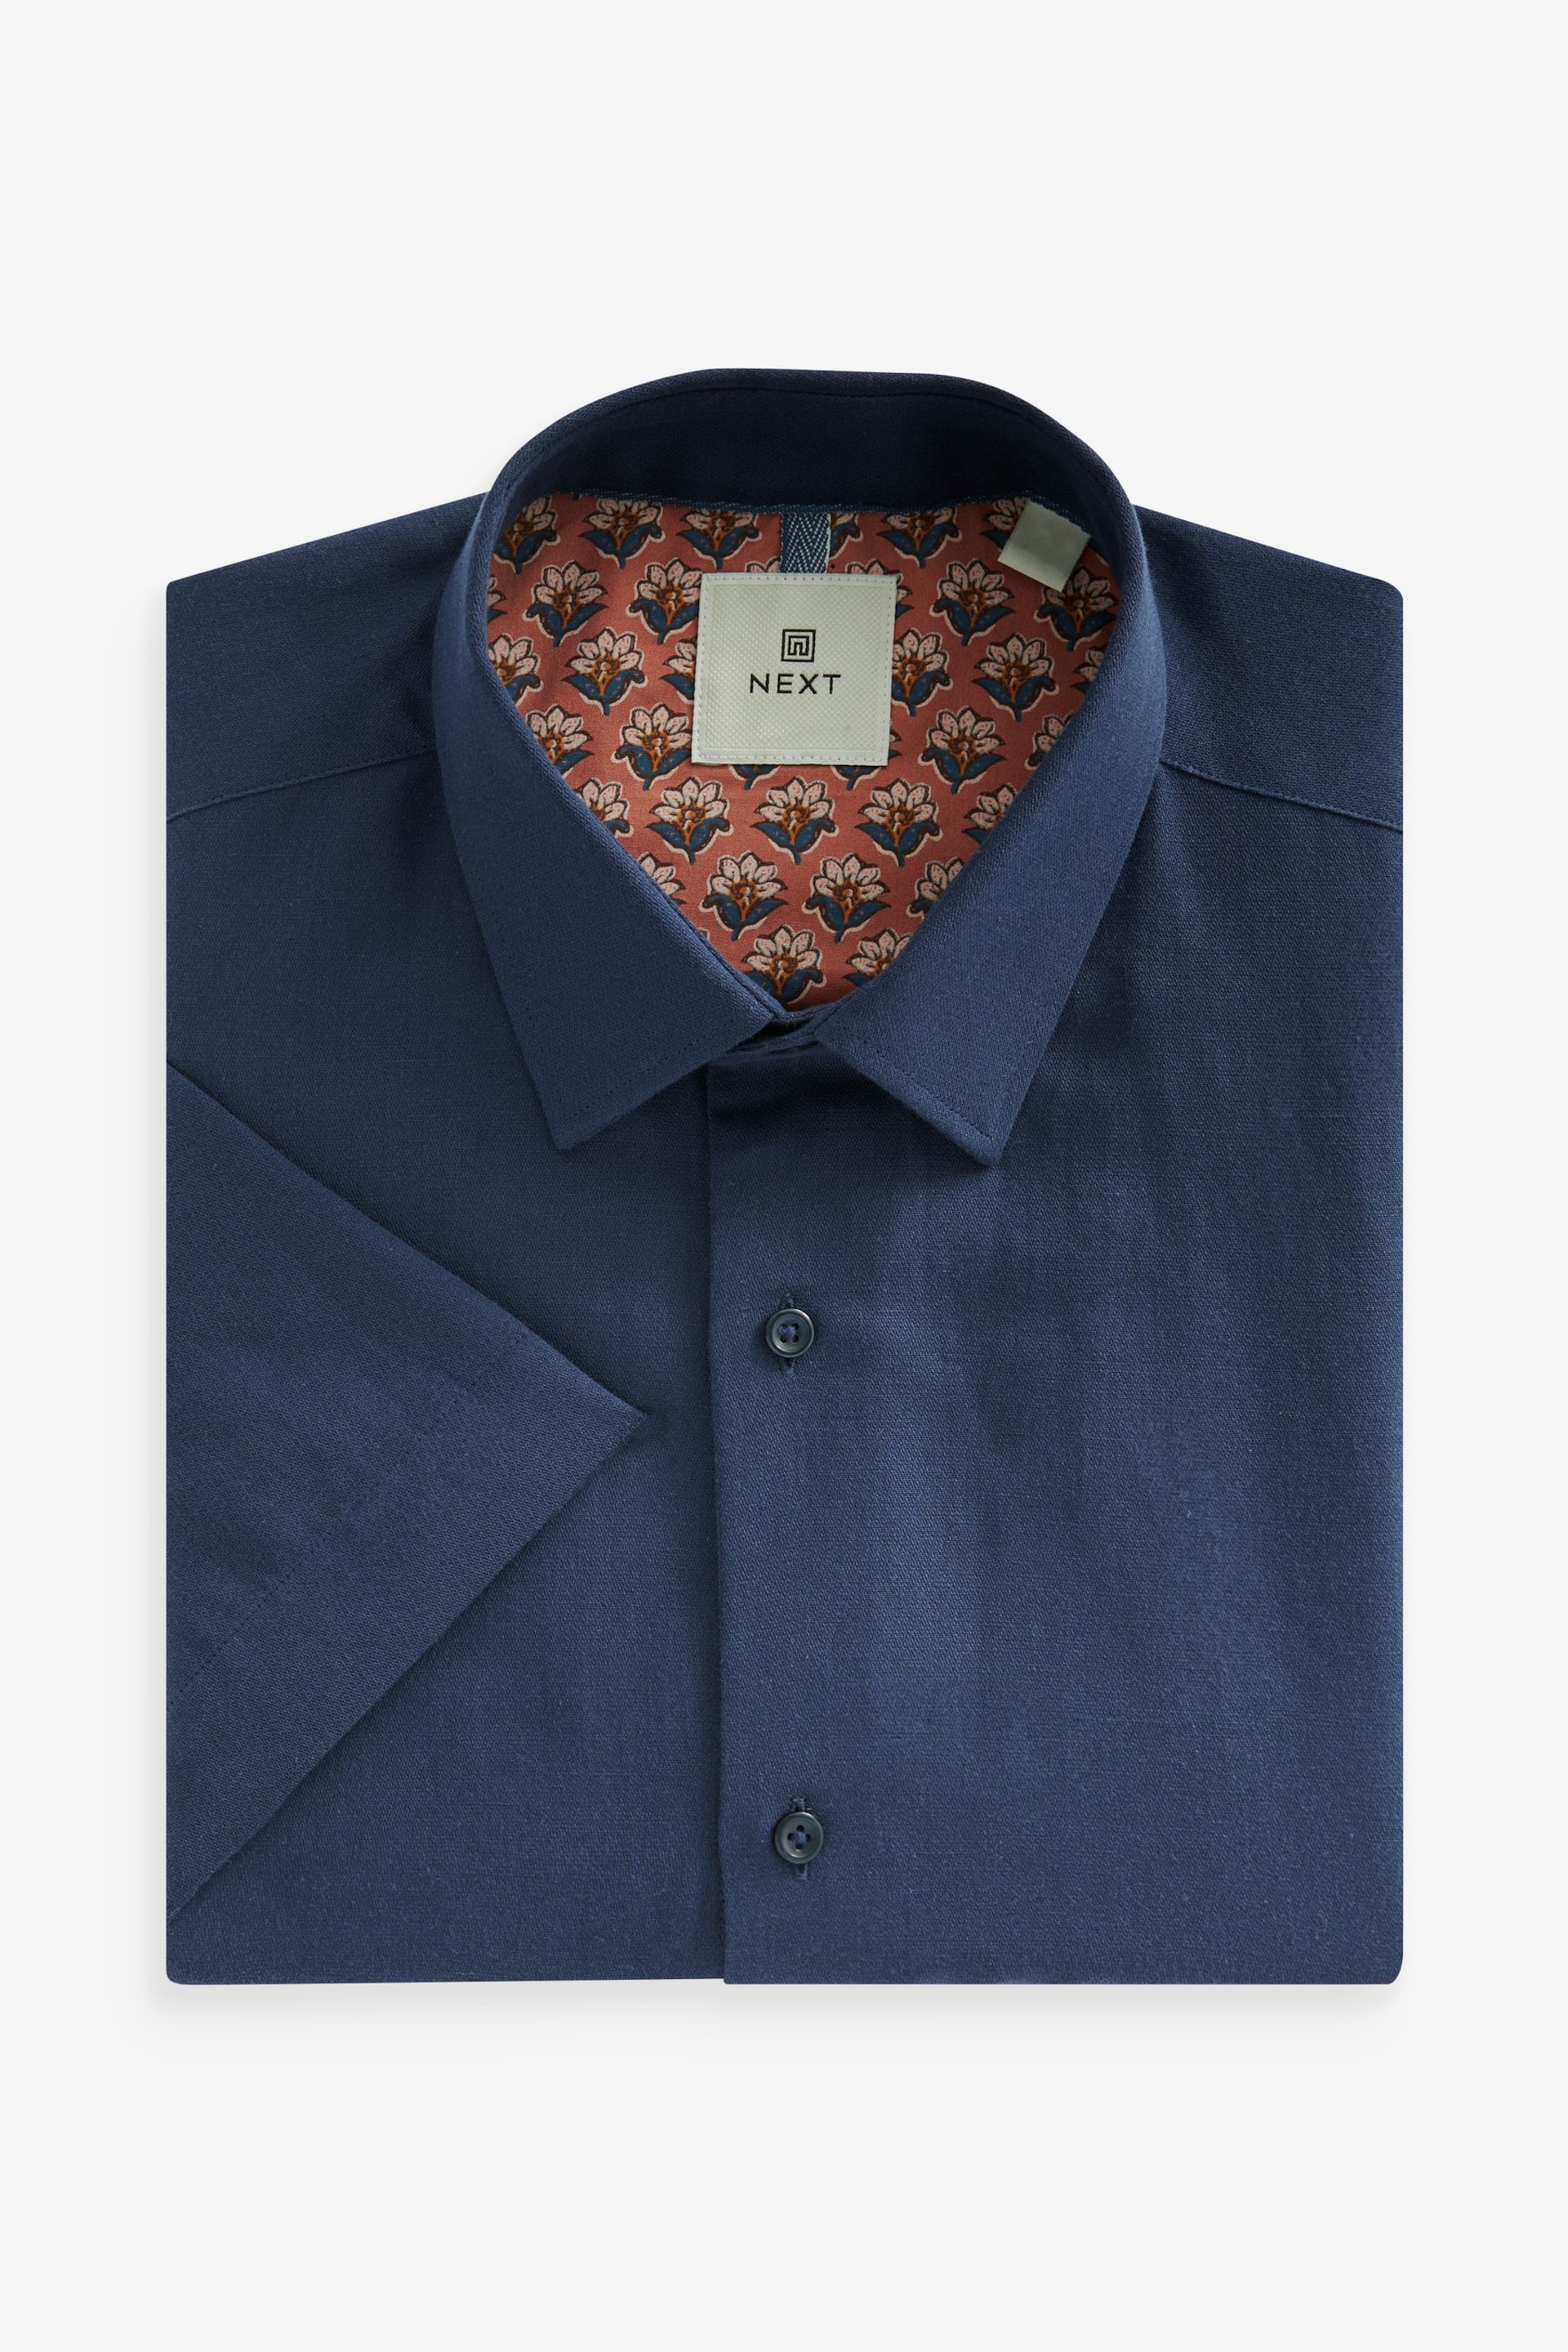 Navy Blue Linen Blend Shirt - Image 5 of 7